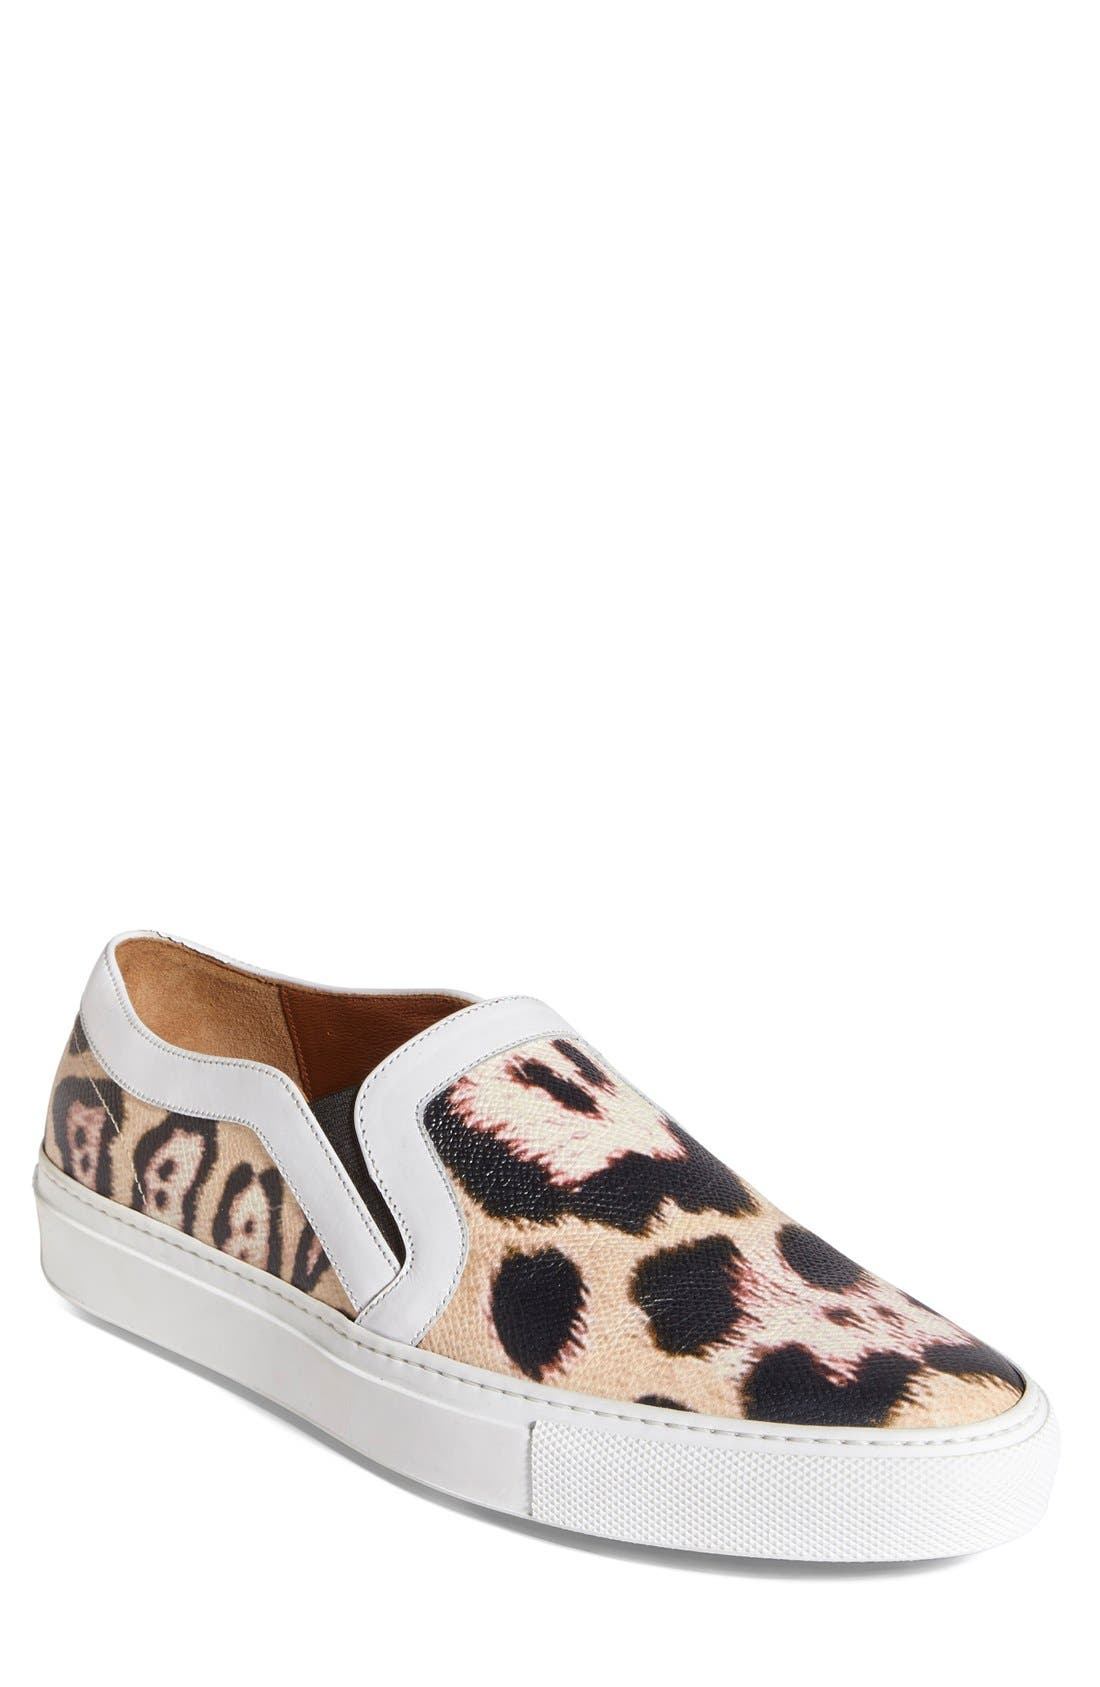 leopard slip on sneakers womens